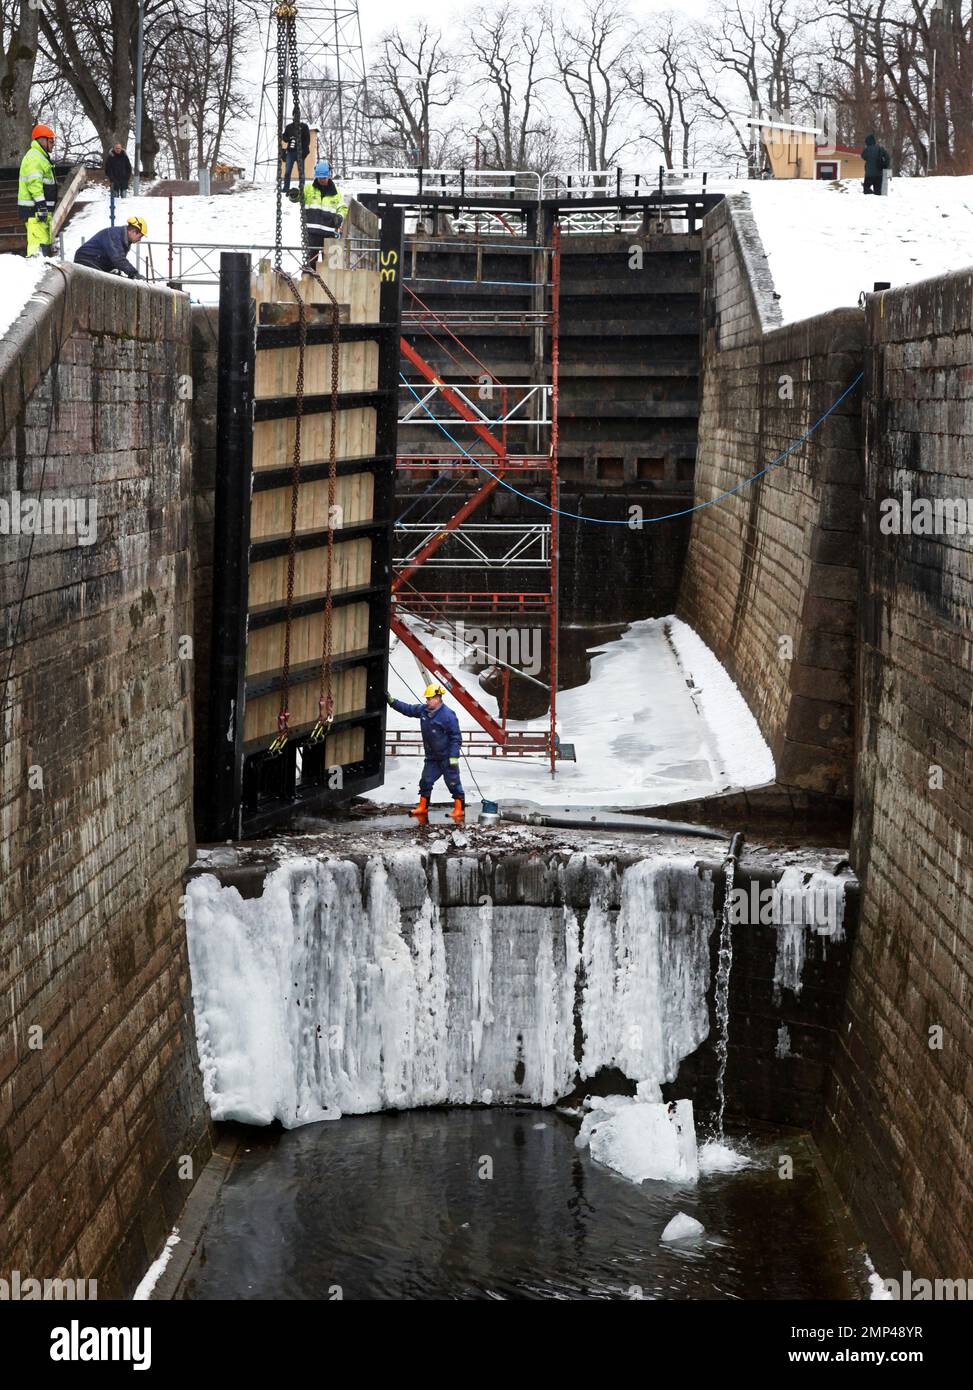 Jetzt bereiten sich die Schleusen des Göta-Kanals für die Saison vor. Gestern wurden die 200 Jahre alten Schleusentore in Borenshult, Motala, Schweden, durch neue ersetzt. Foto: Jeppe Gustafsson Stockfoto